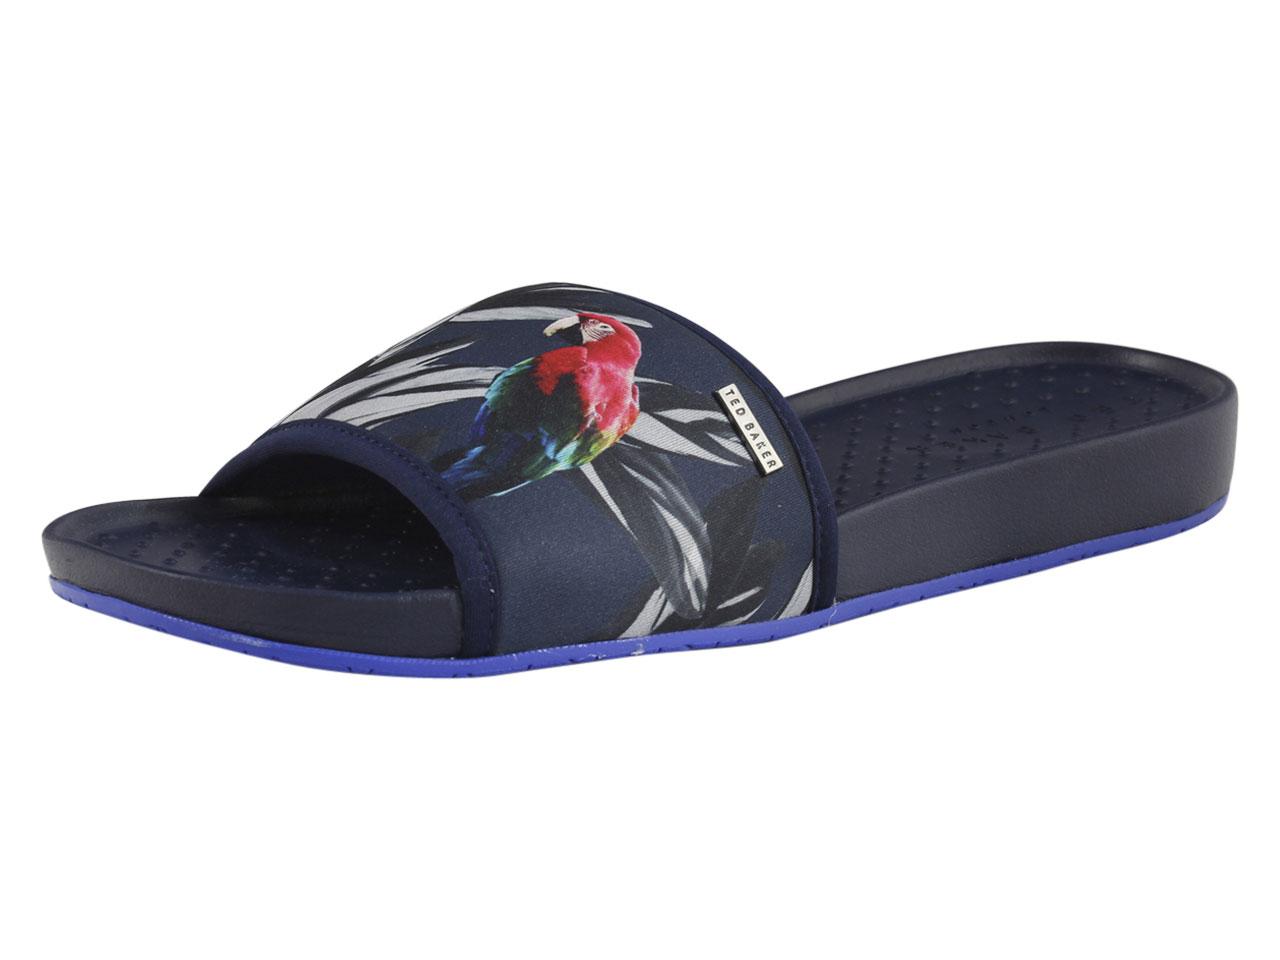 Ted Baker Men's Sauldi Slides Sandals Shoes - Blue - 10 D(M) US